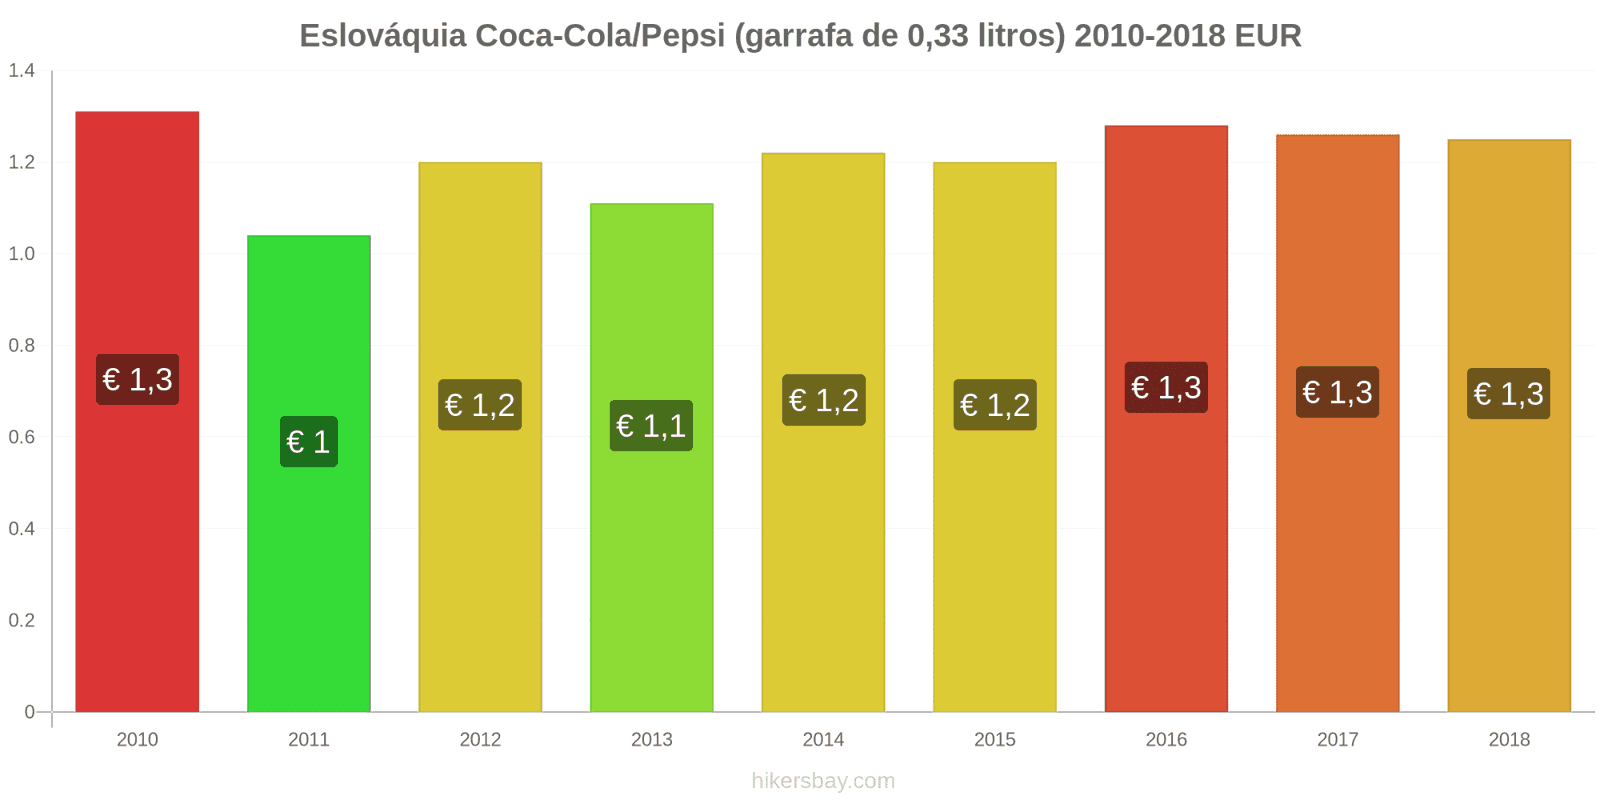 Eslováquia mudanças de preços Coca-Cola/Pepsi (garrafa de 0.33 litros) hikersbay.com